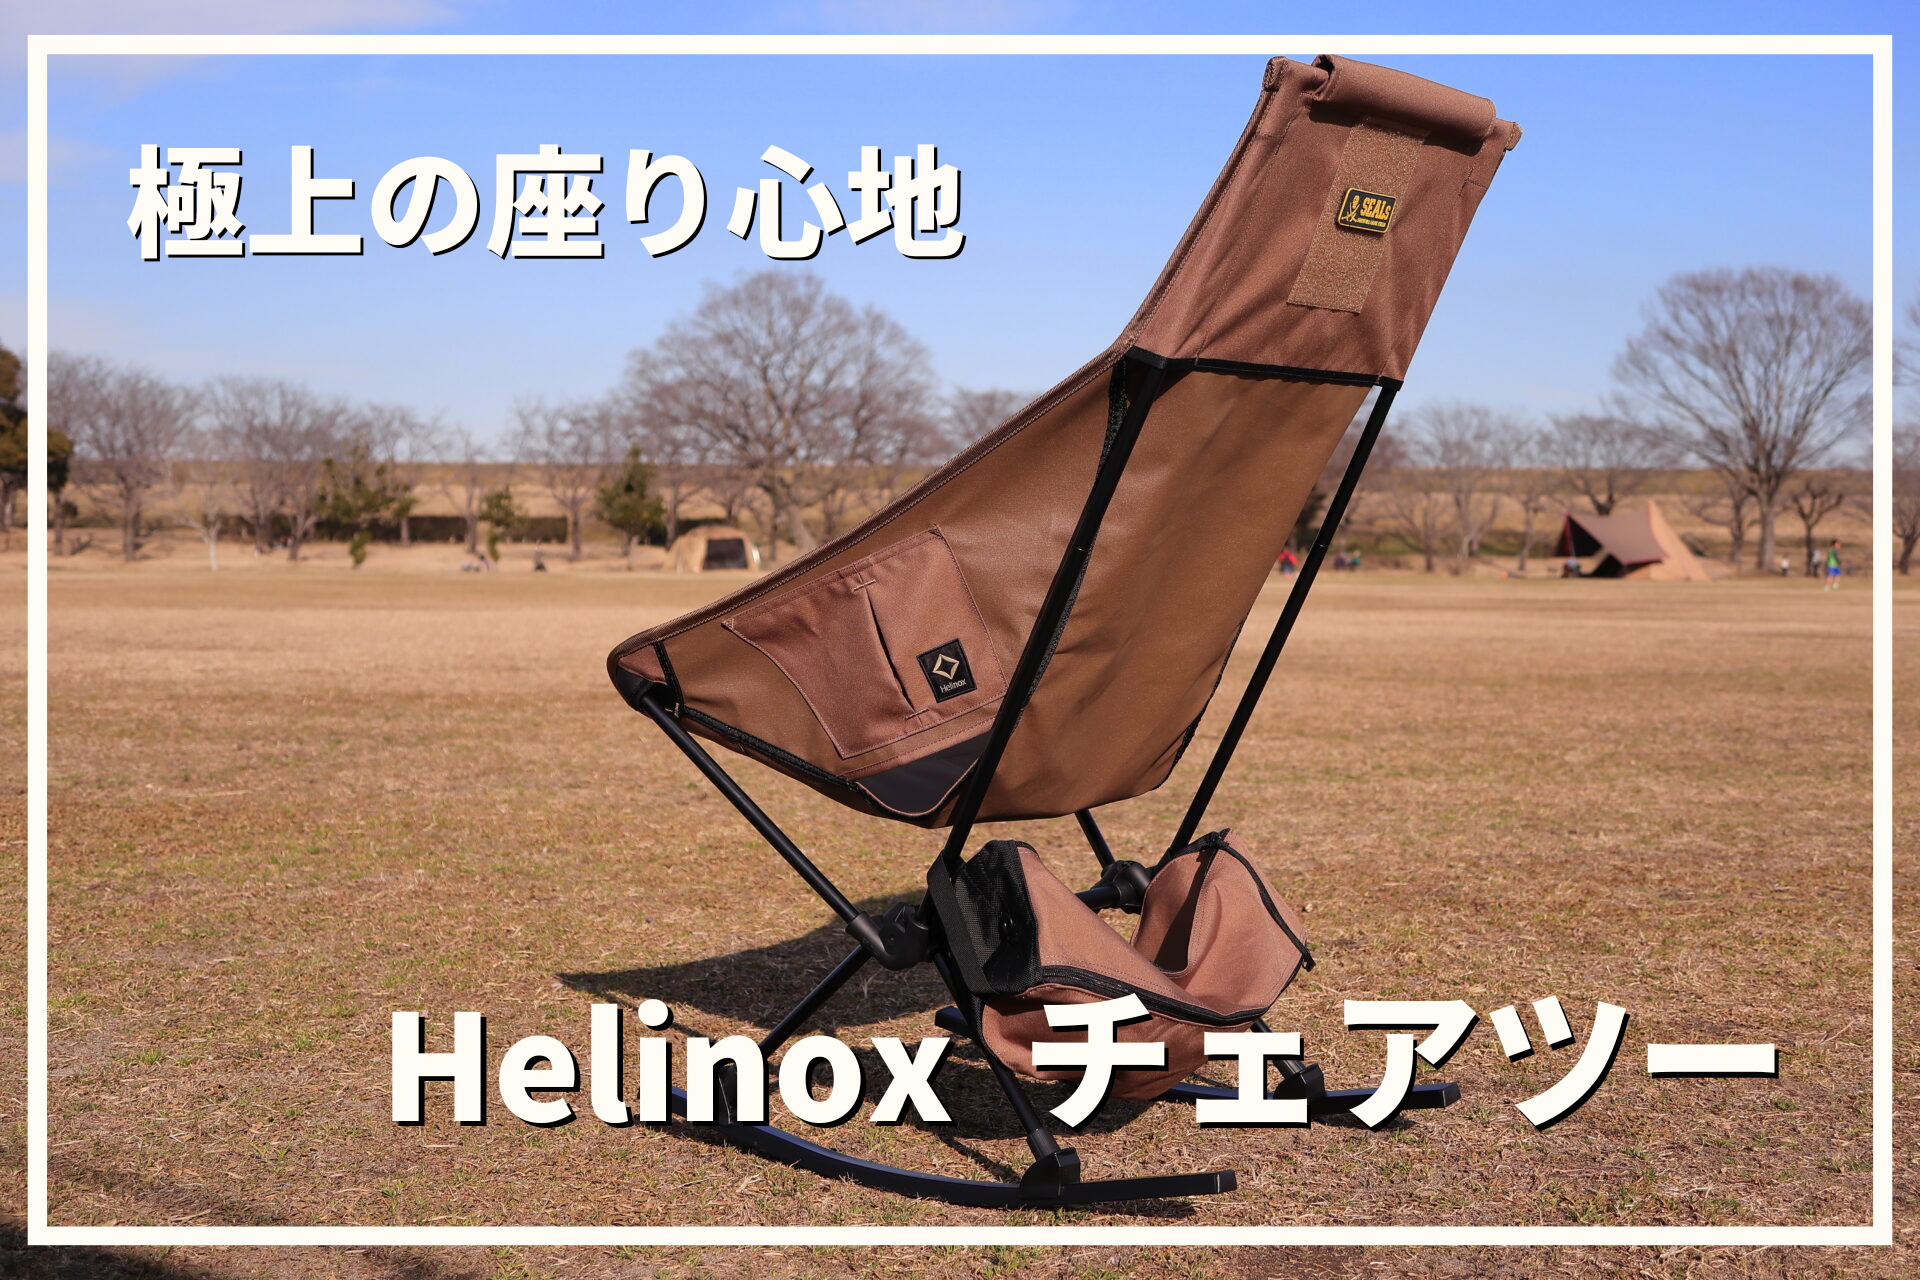 銀座本店 新品 ヘリノックス チェアーツー ロッキングフット セールオンライン:6723円 ブランド:ヘリノックス テーブル/椅子